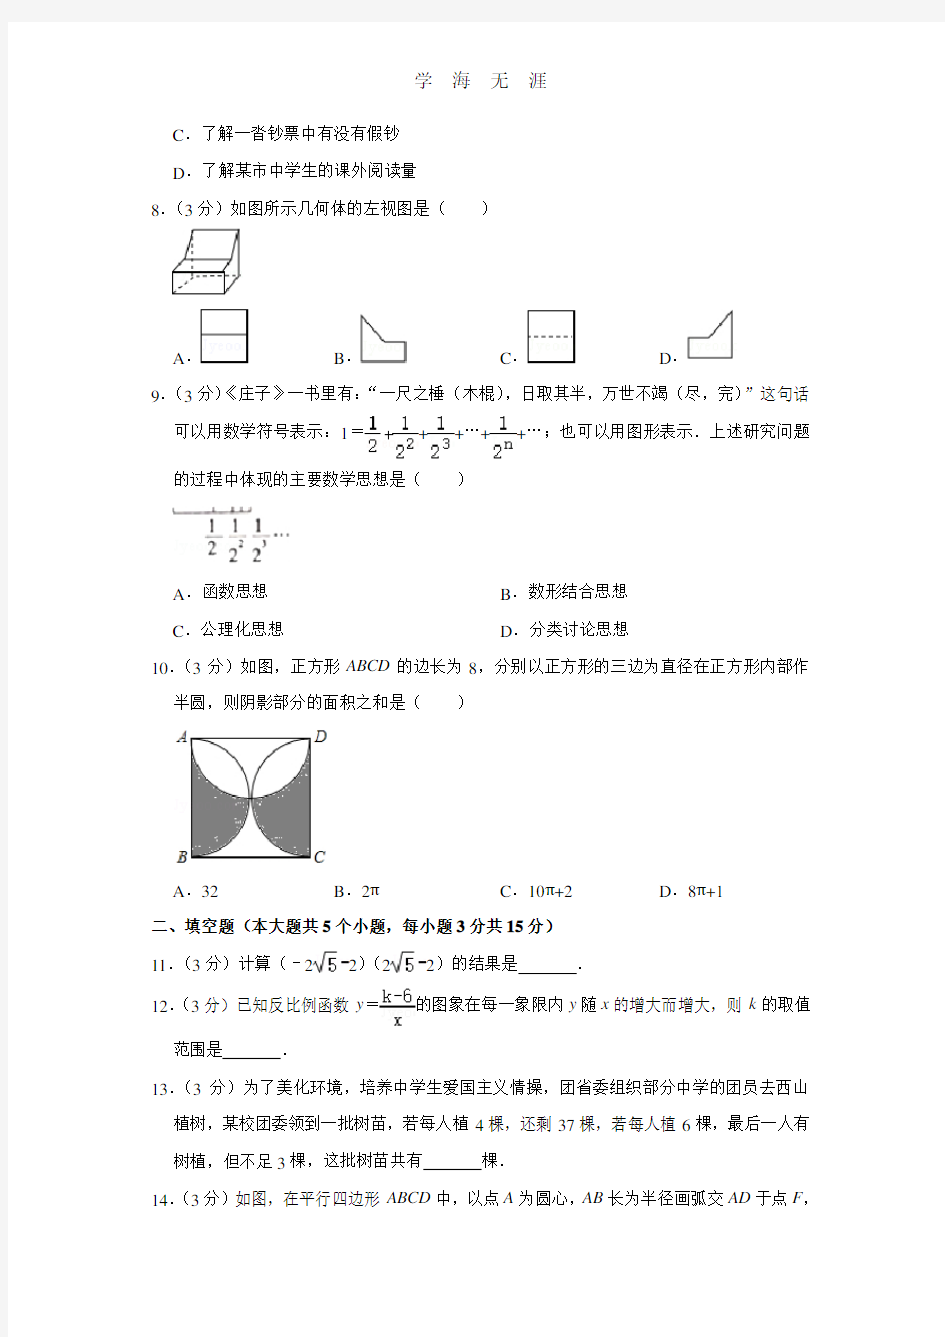 山西省中考模拟百校联考数学试卷(二)(2020年整理).doc